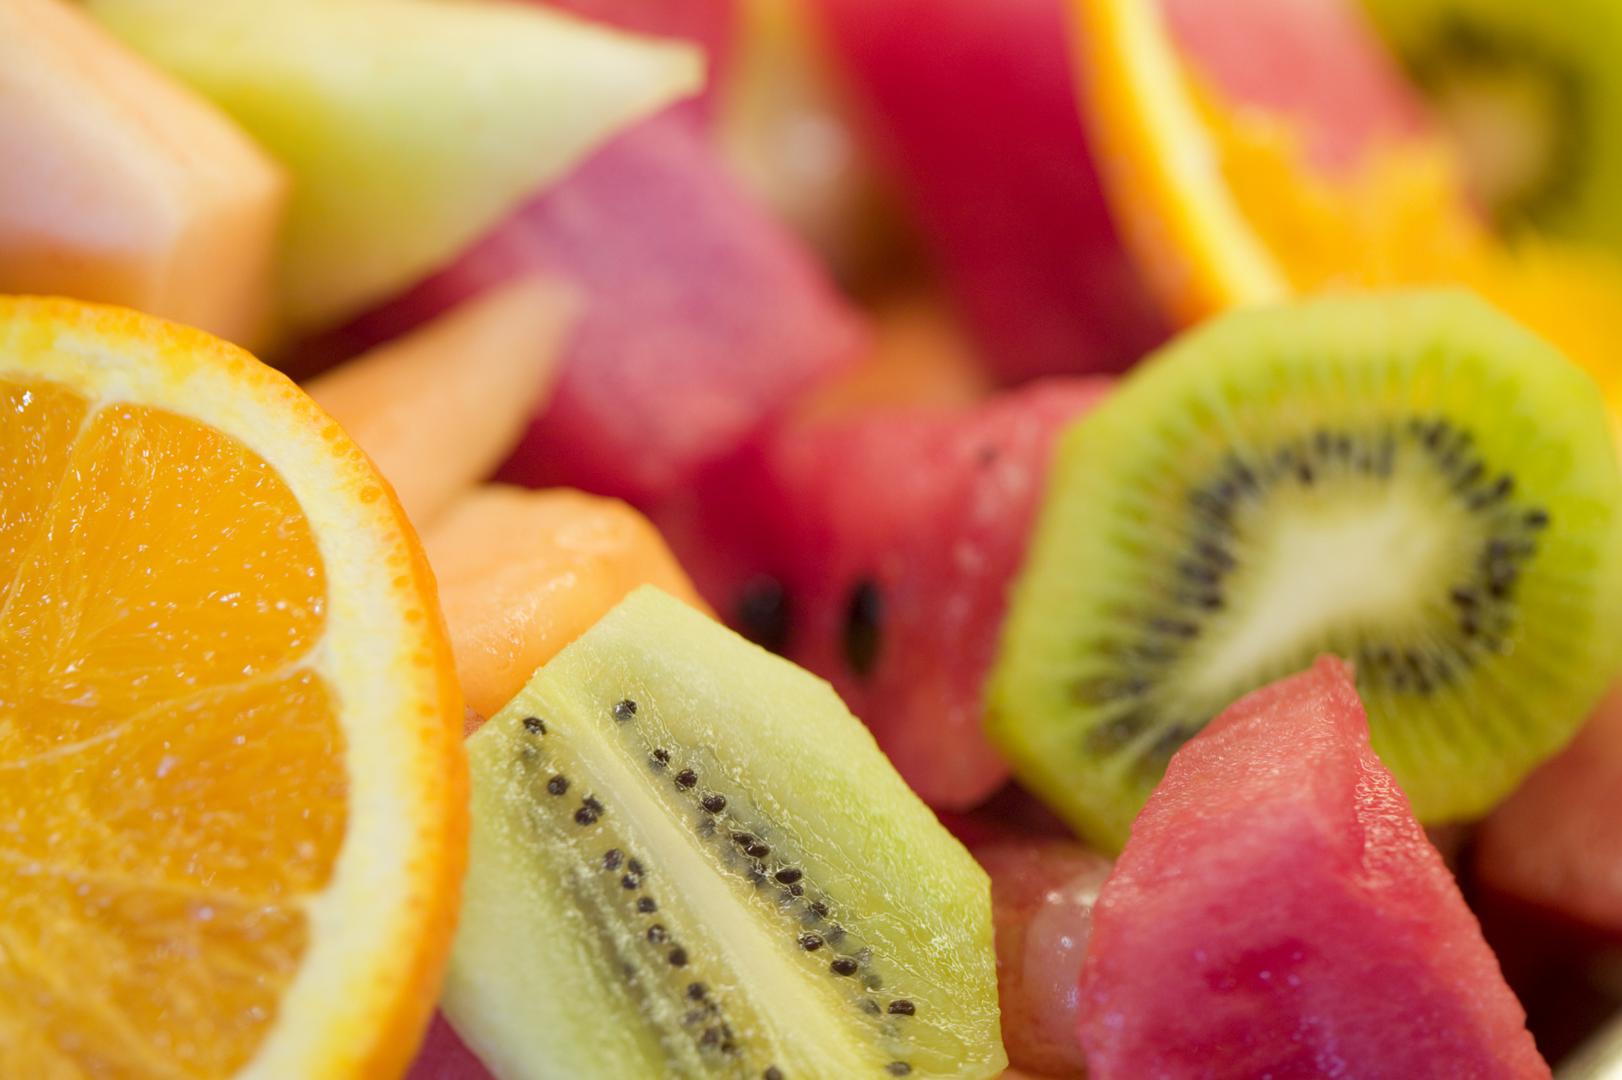 Soda bikarbona - Eksperiment s jabukama je pokazao da na ovom voću ostaje znatno manje pesticida ako ih držite 8 minuta u vodi u koju ste dodali i sodu bikarbonu, a nakon 12 do 15 minuta na voću uopće nije bilo pesticida! 